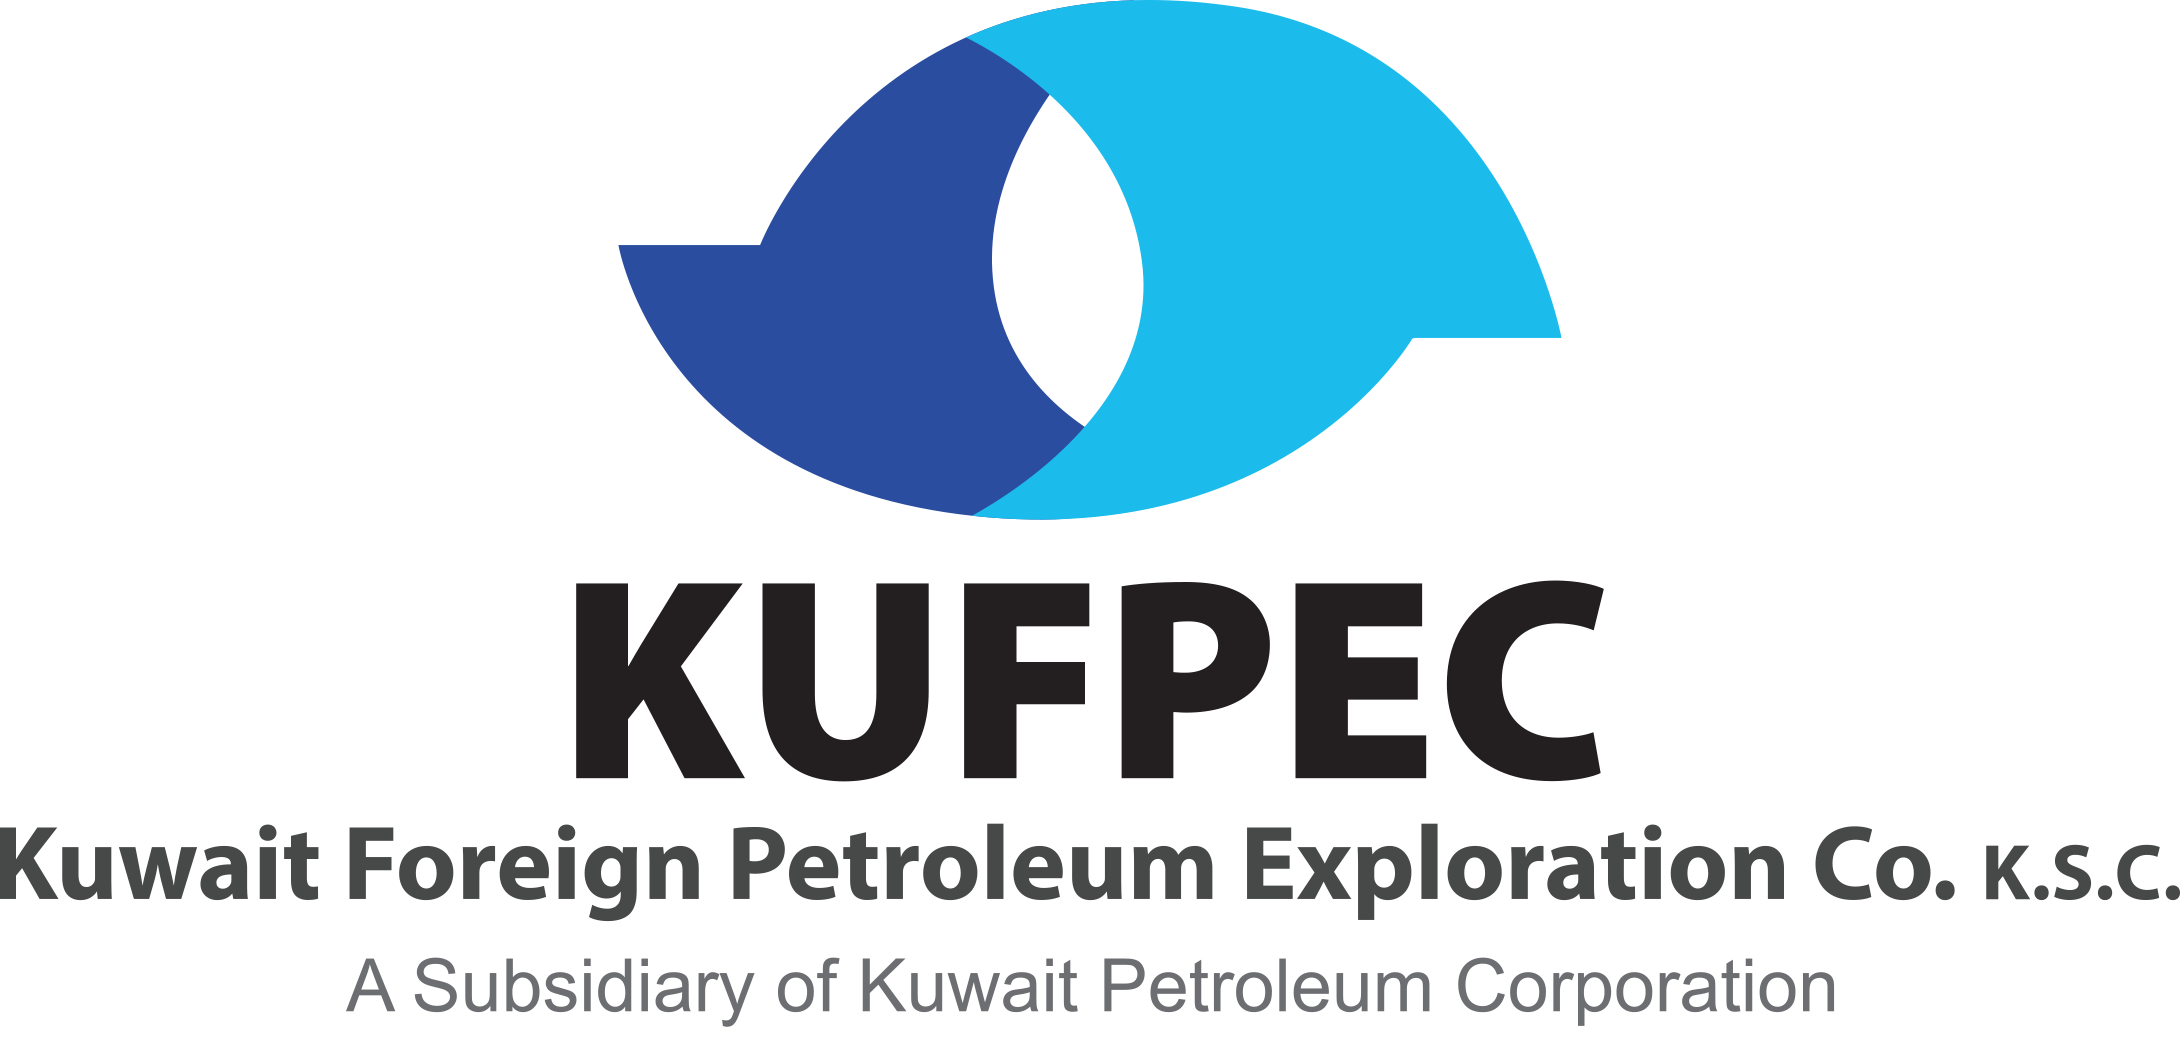 الكويتية للاستكشافات البترولية